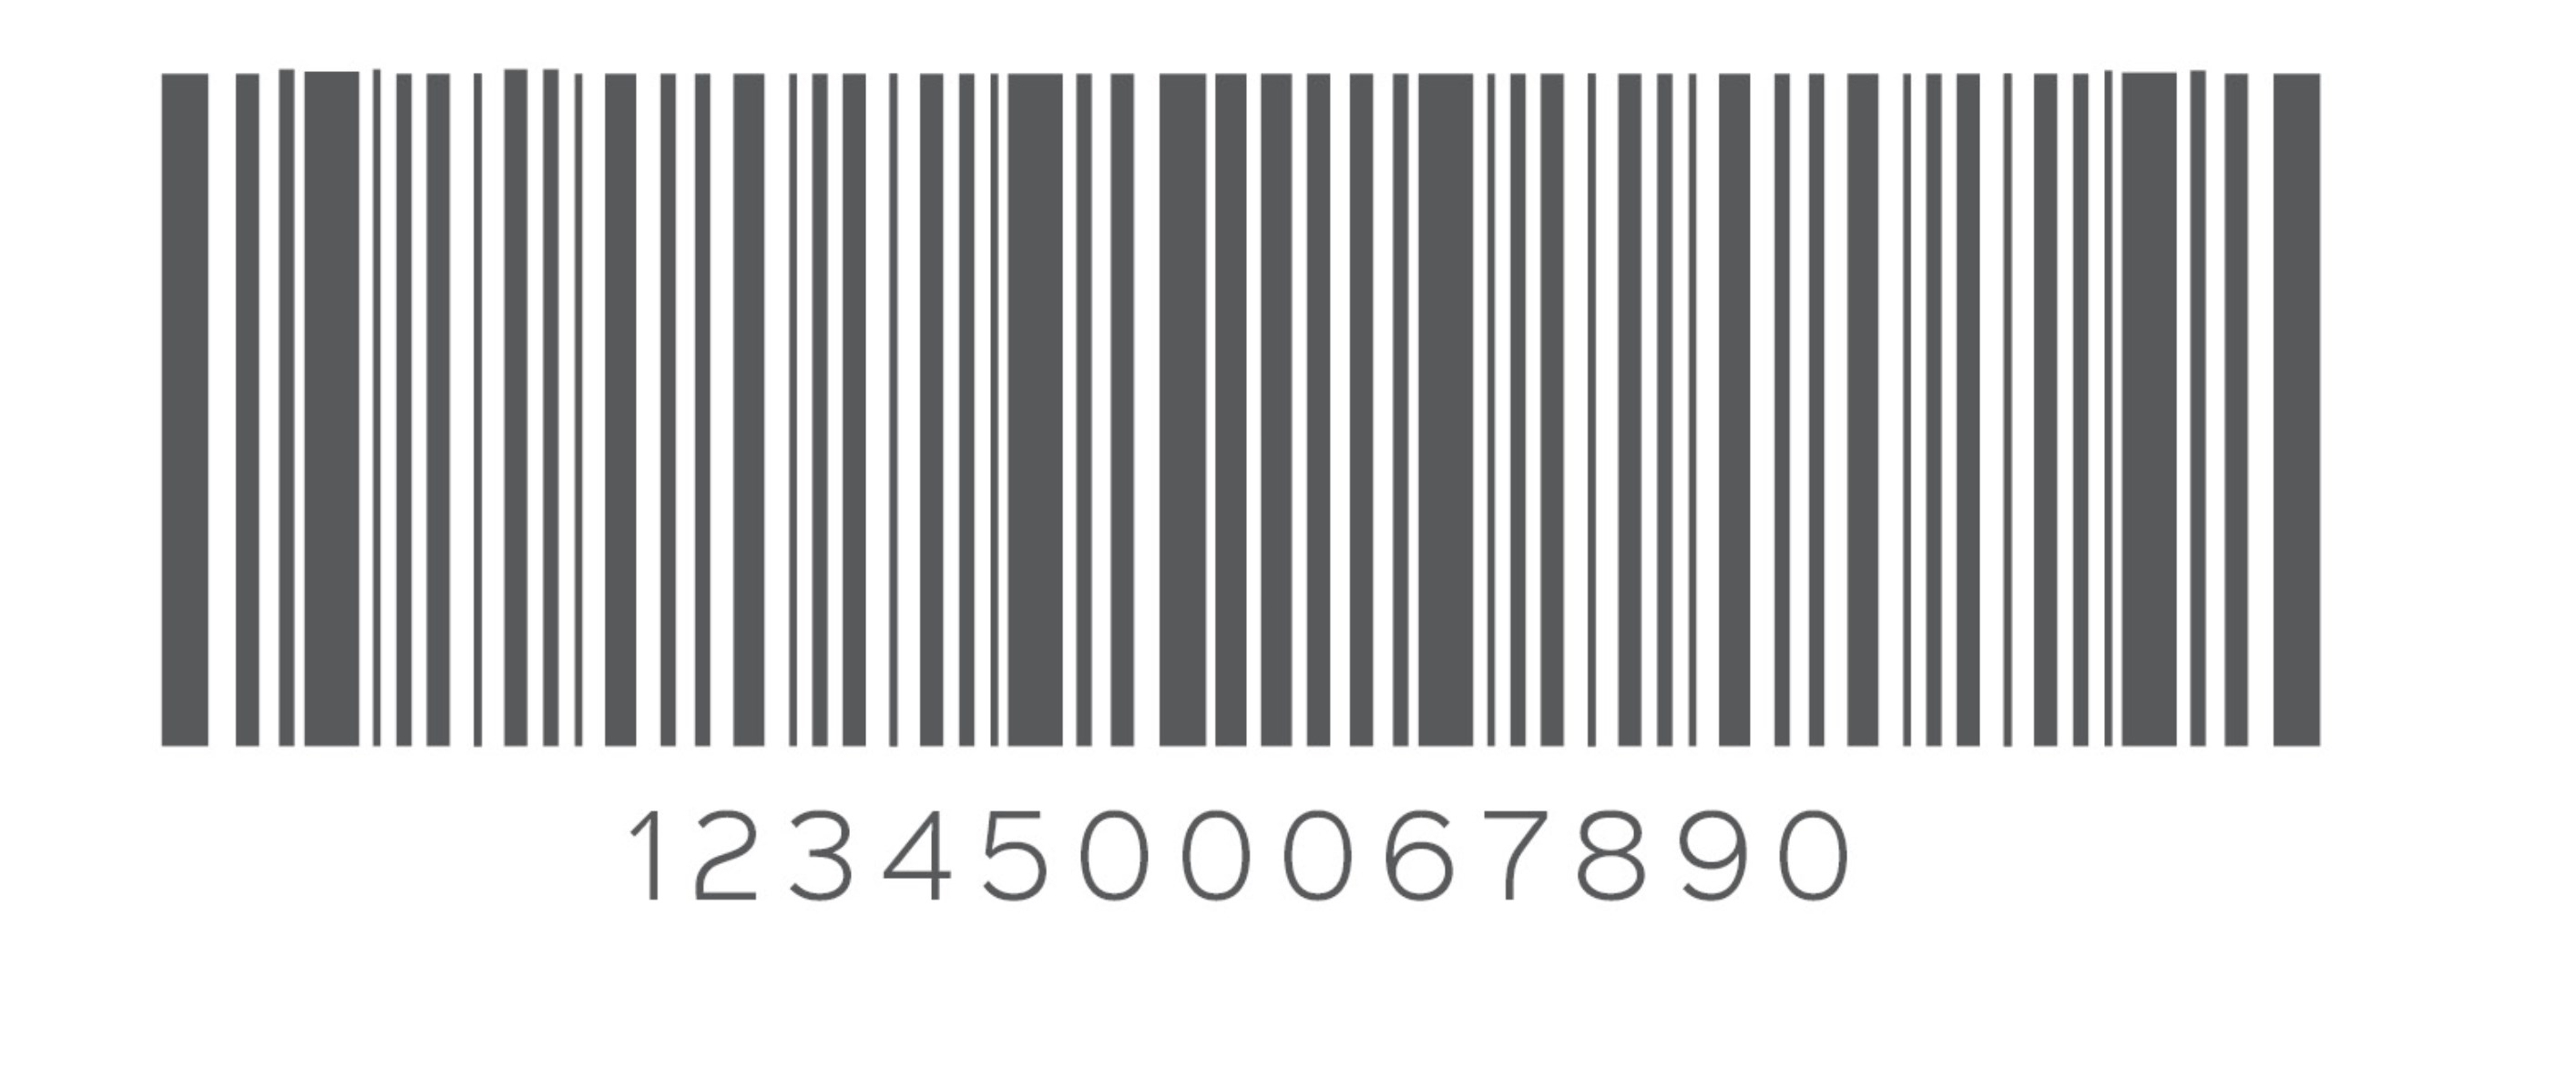 Уникальный штрих код. Штрих код. Линейный штрих код. Рисунок штрих кода. Красивый штрих код.